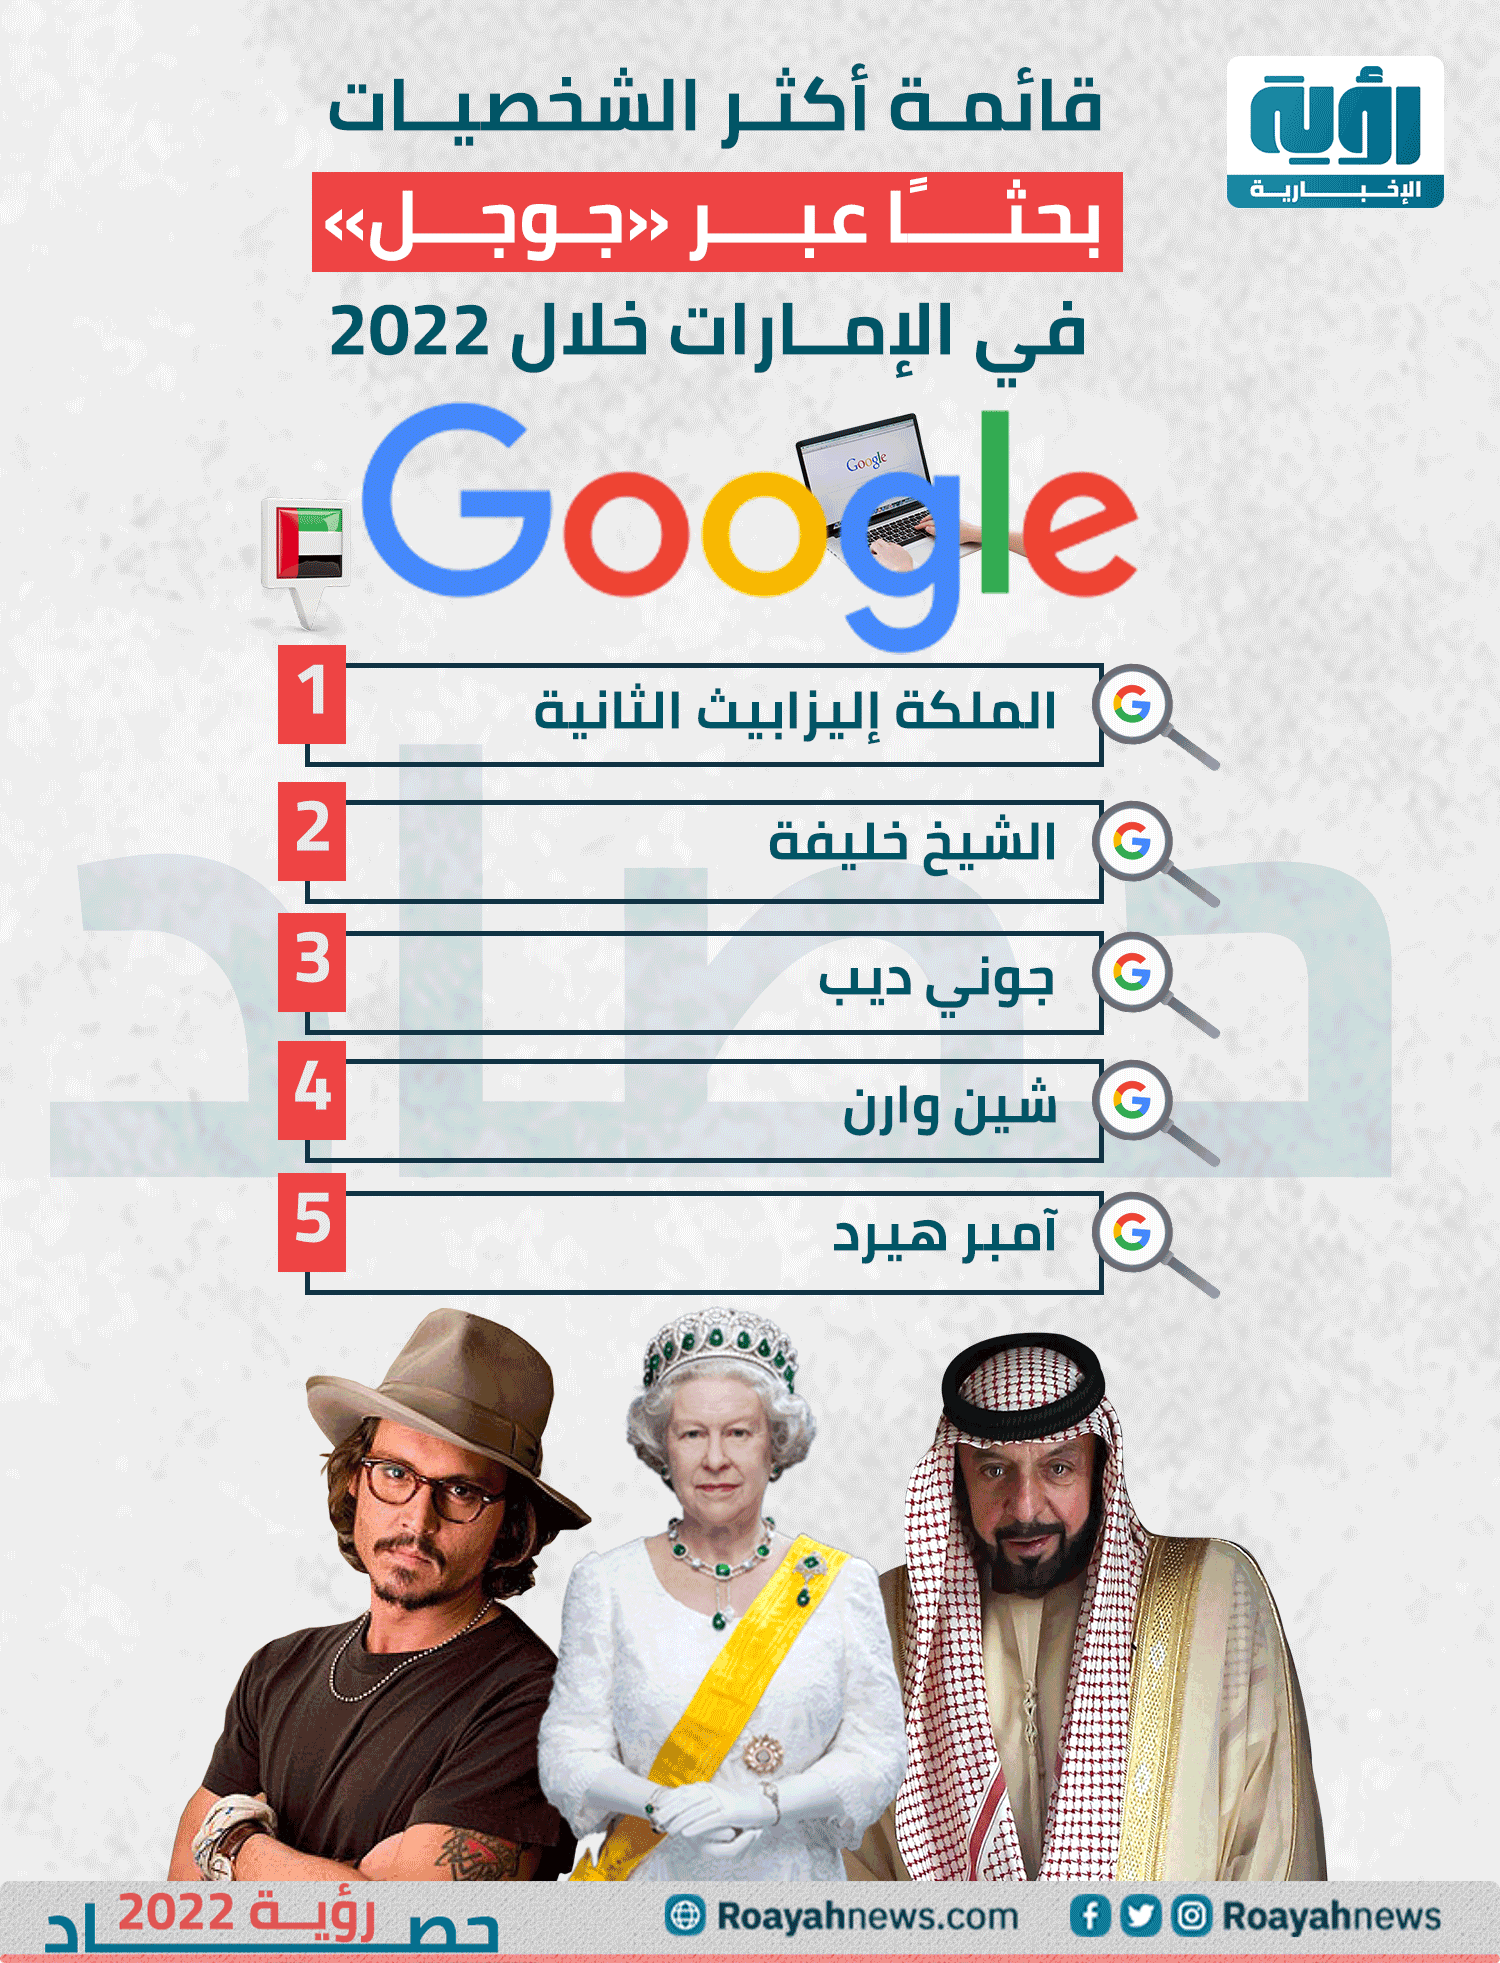 قائمة أكثر الشخصيات بحثًا عبر جوجل في الإمارات خلال 2022